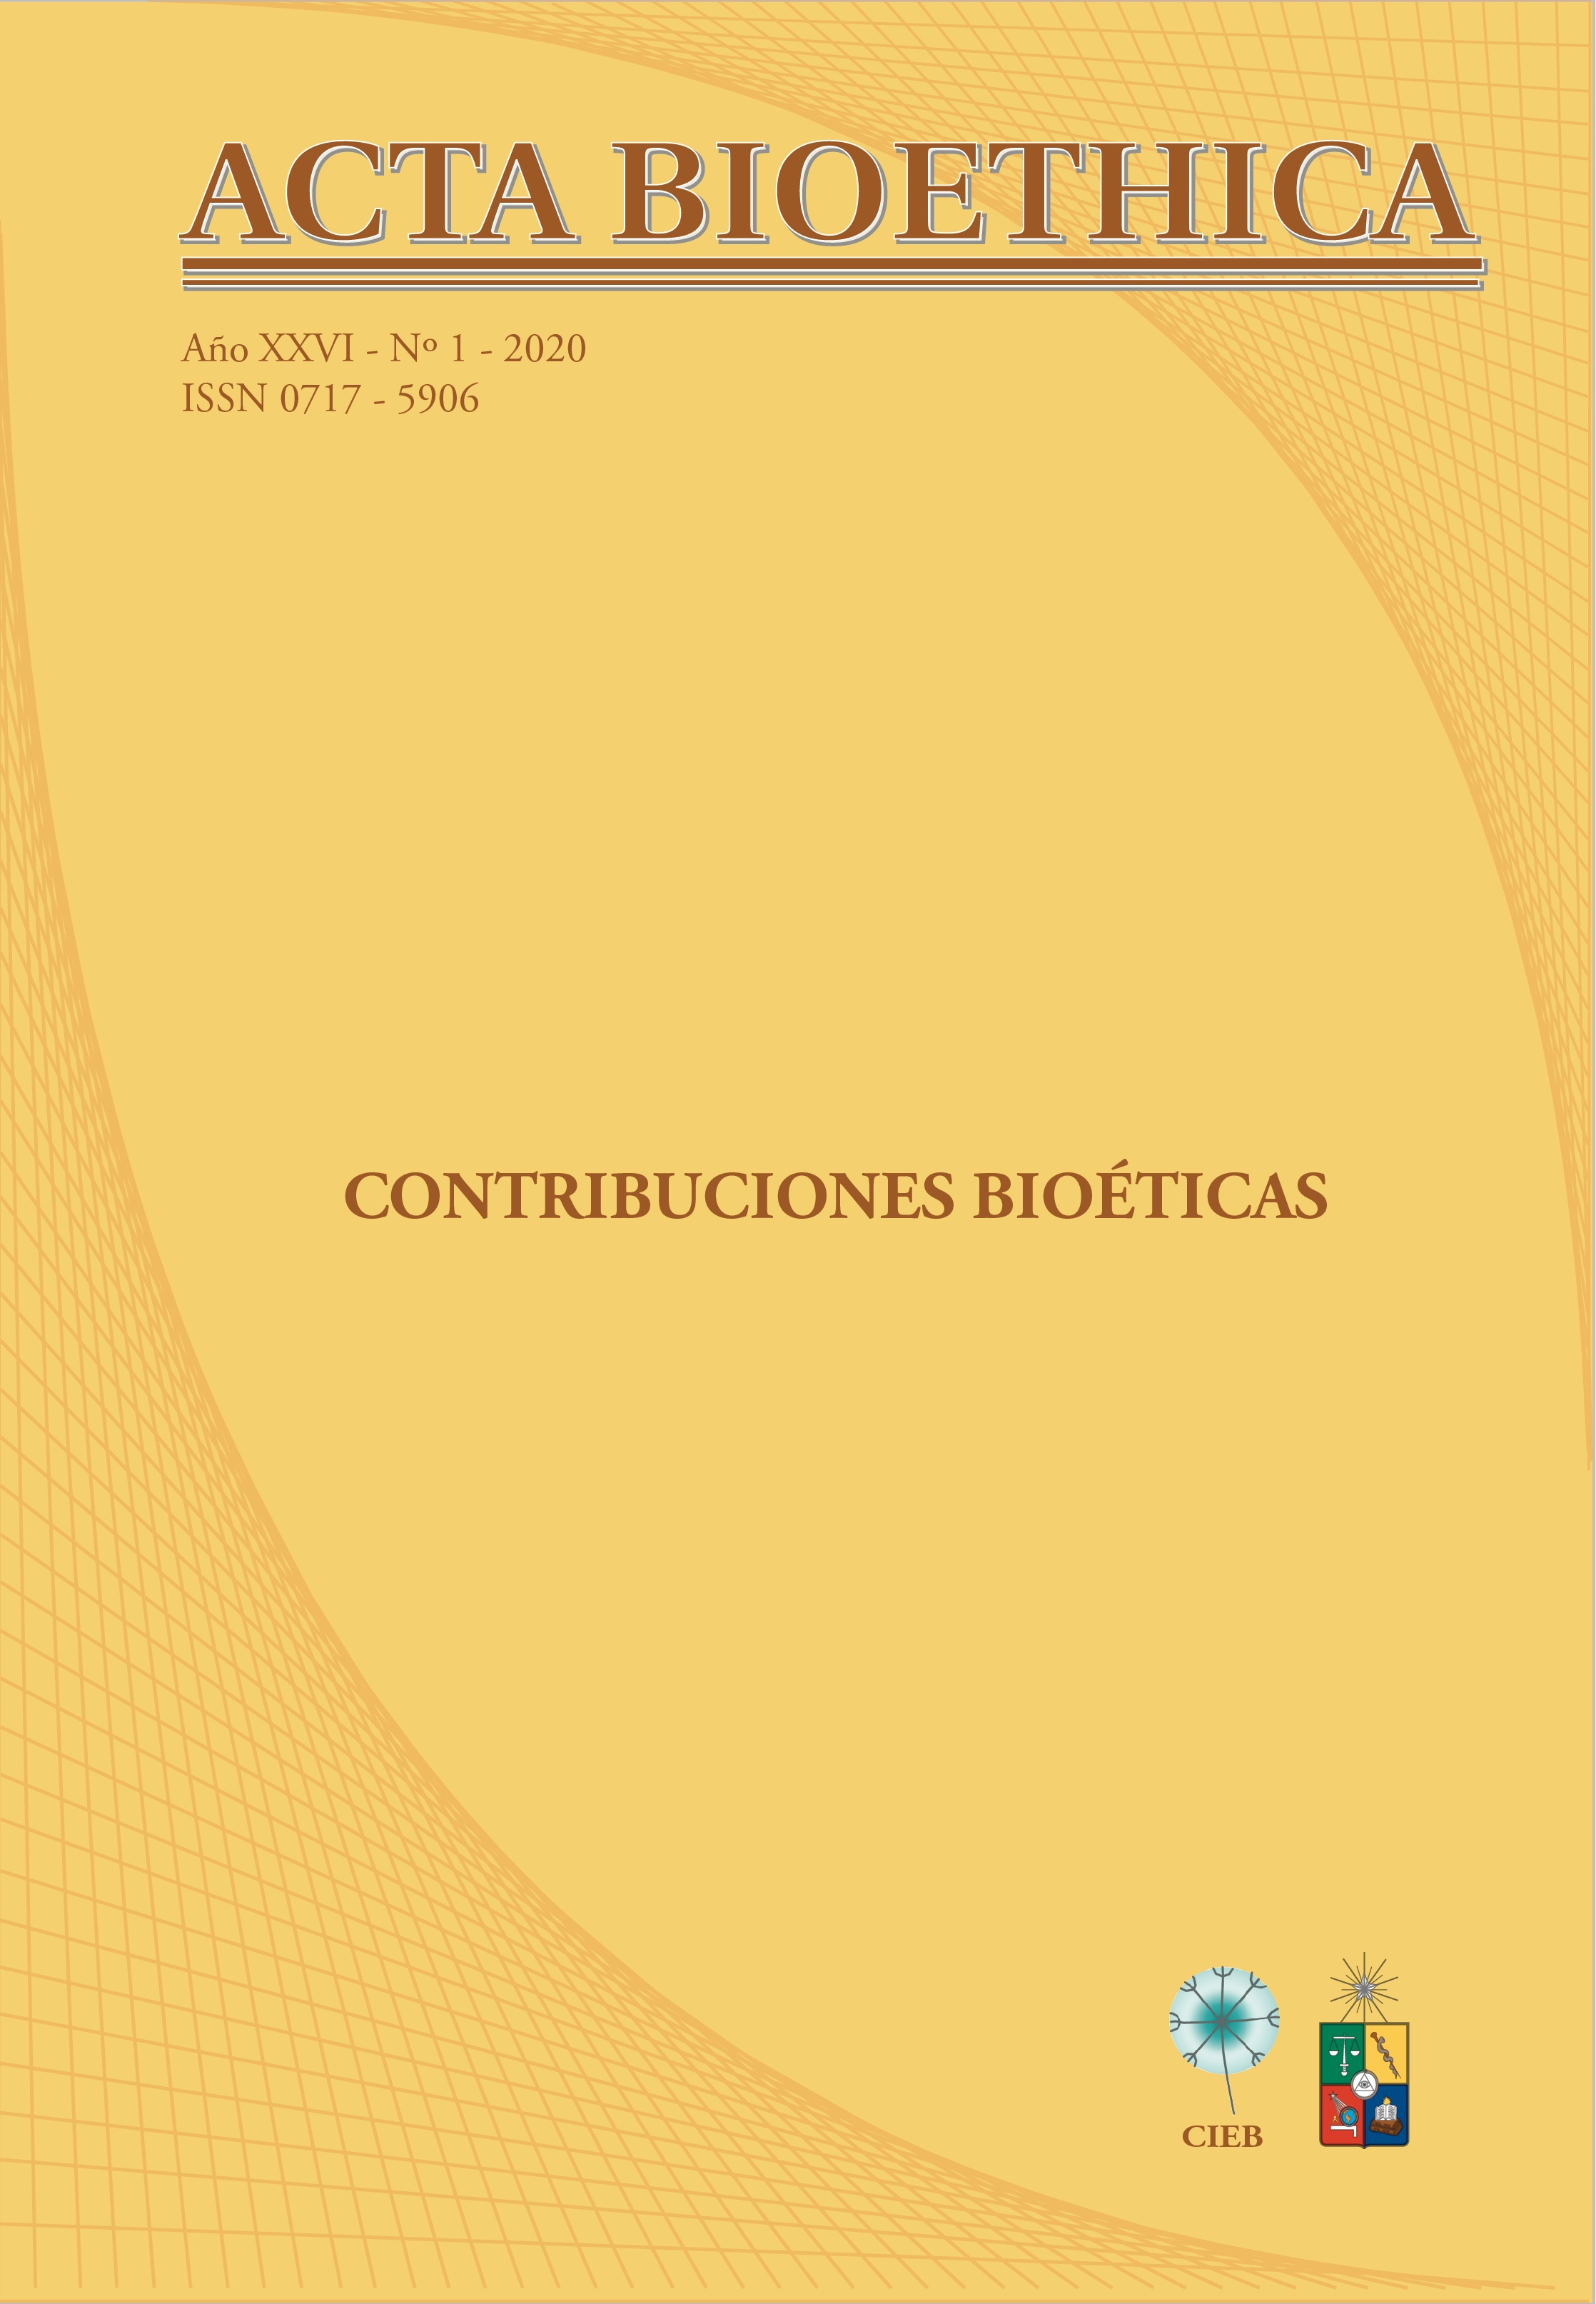 											View Vol. 26 No. 1 (2020): Contribuciones bioéticas
										